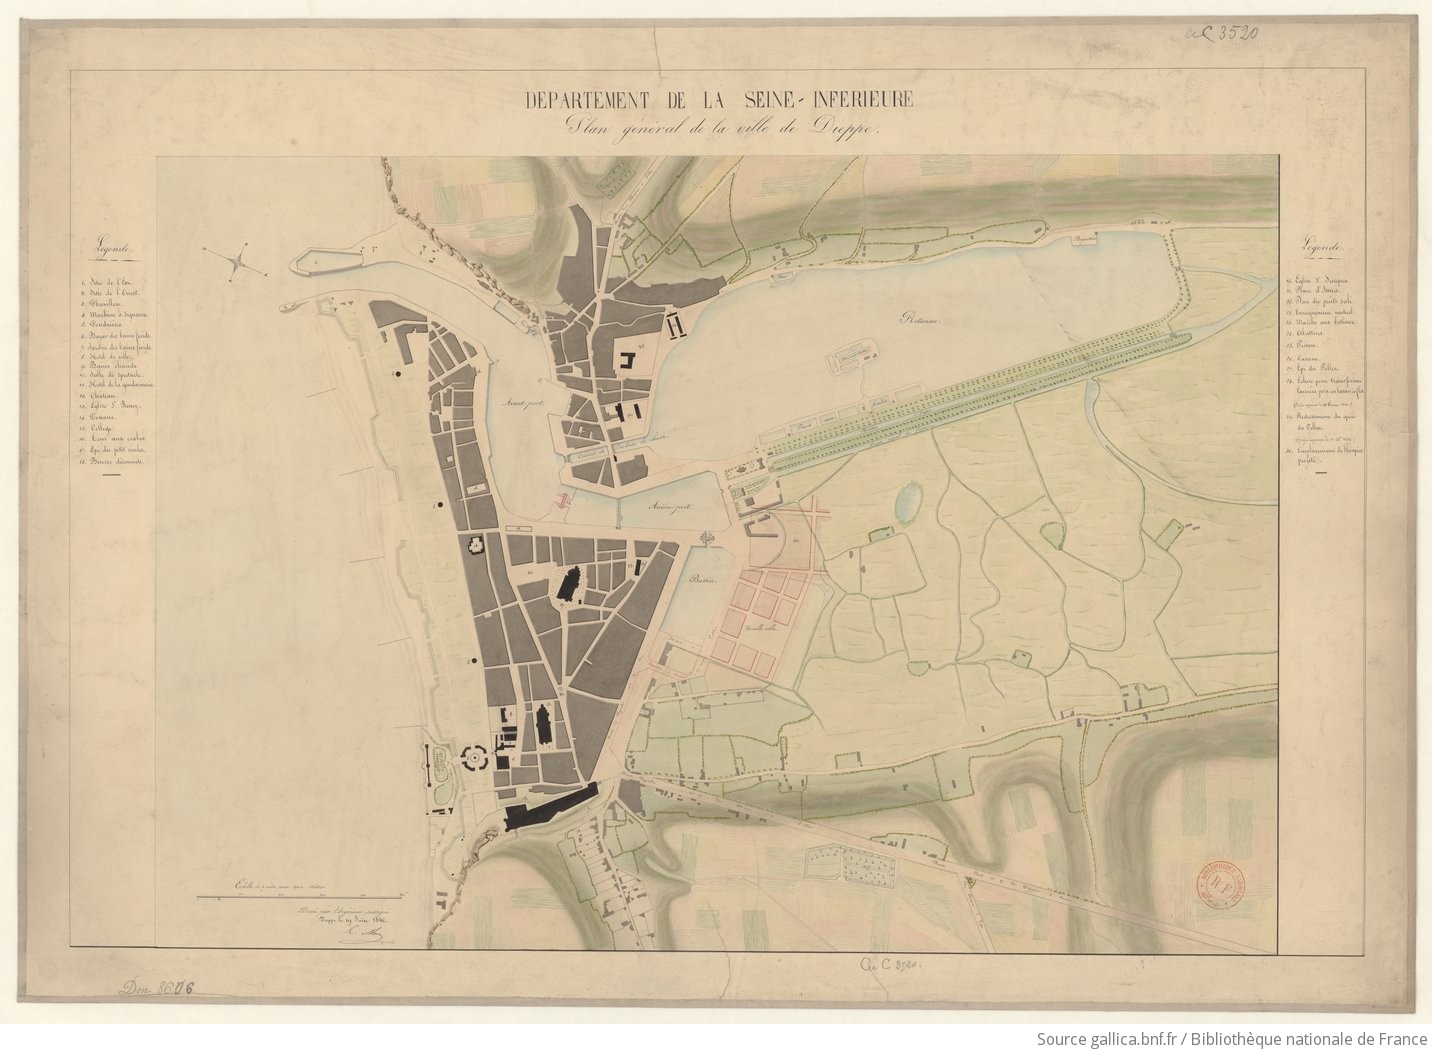 Département de la Seine-Inférieure. Plan général de la ville de Dieppe dressé par l'ingénieur soussigné. Dieppe, le 19 juin 1840